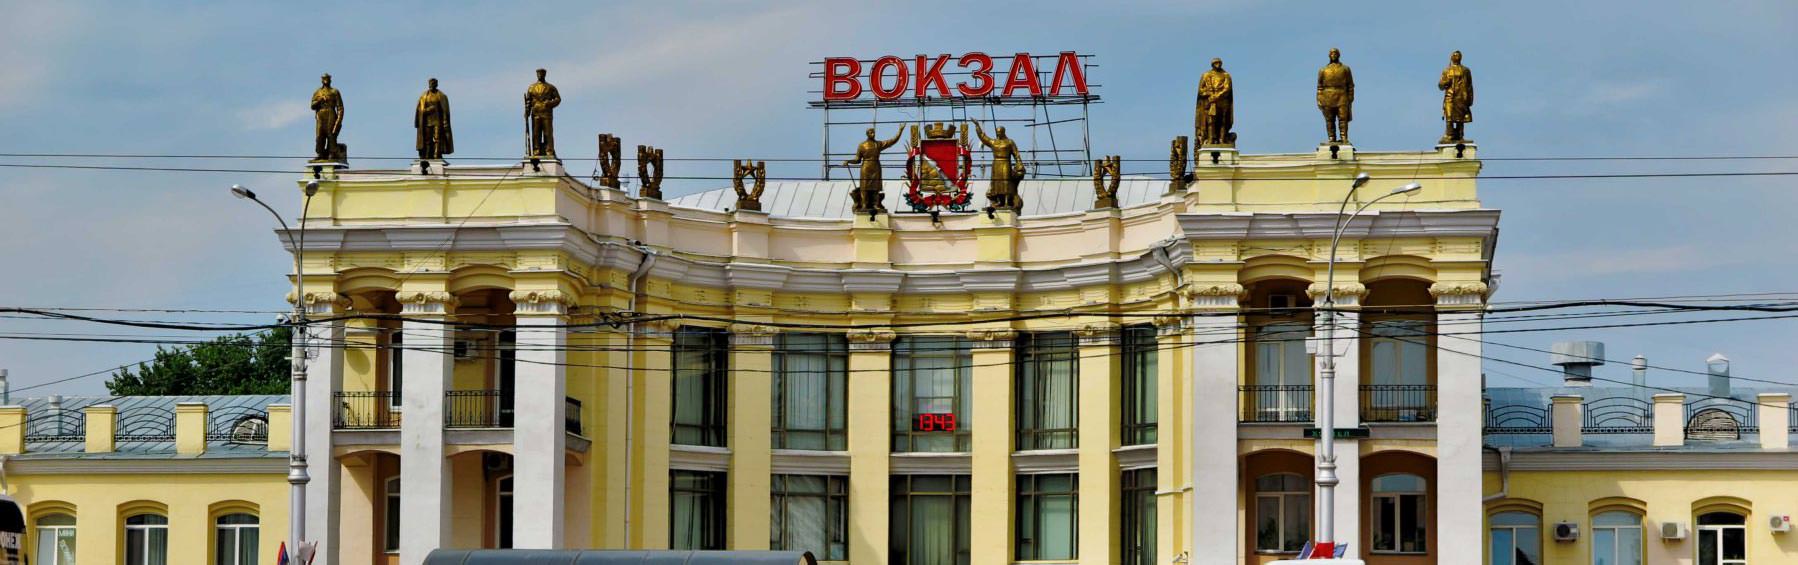 Вокзал Воронеж: купить жд билеты на поезд на сайте